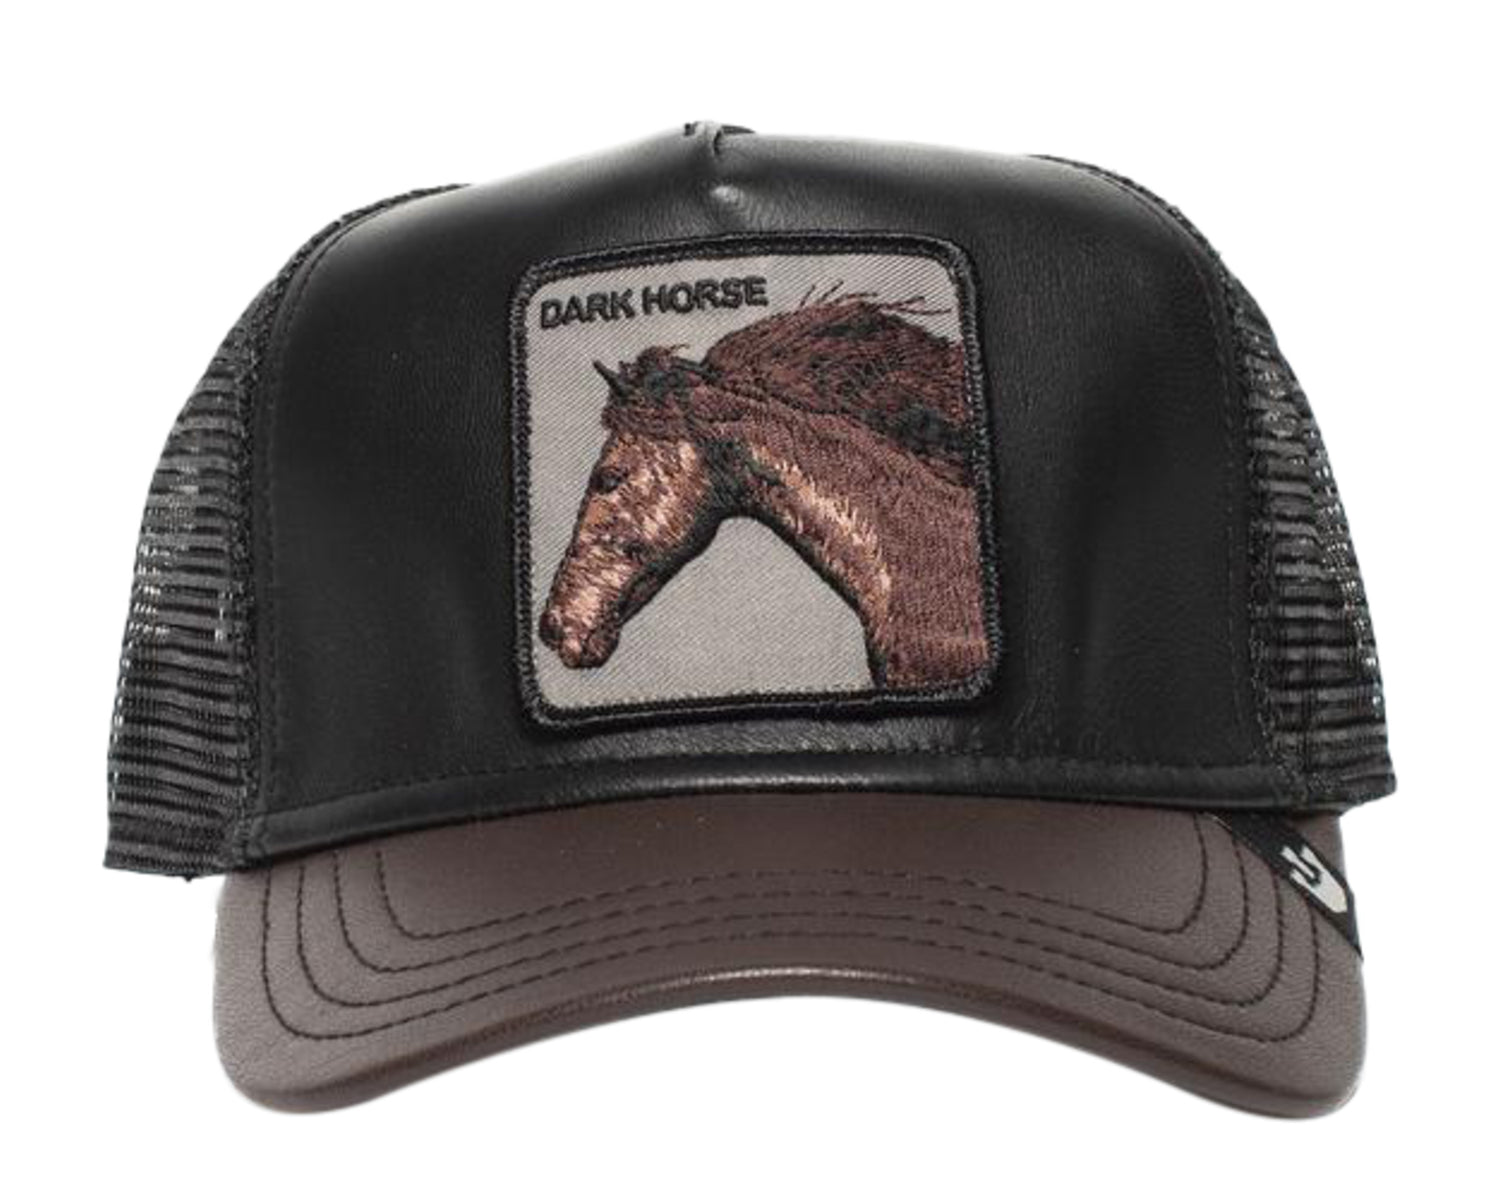 Goorin Bros - The Farm - Your Majesty Dark Horse Trucker Hat